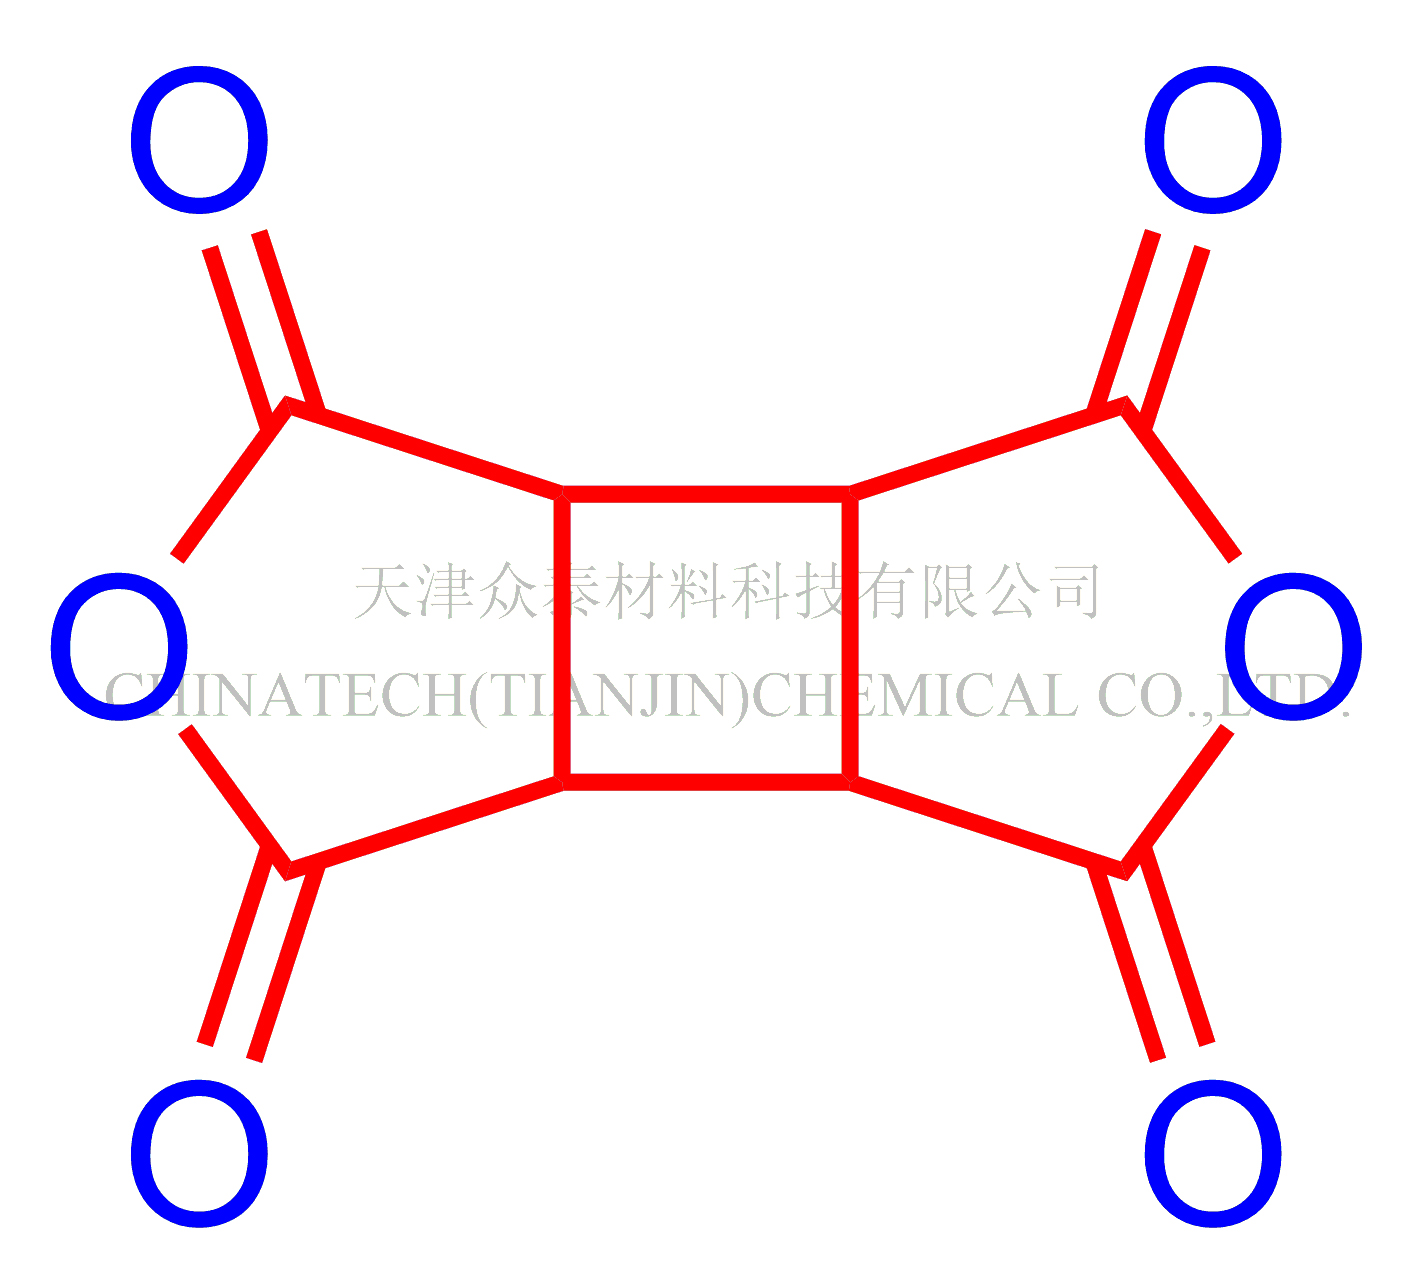 氢化均苯四甲酸二酐(CBDA),1,2,3,4-Cyclobutanetetracarboxylic1,2,3,4-dianhydride (CBDA)